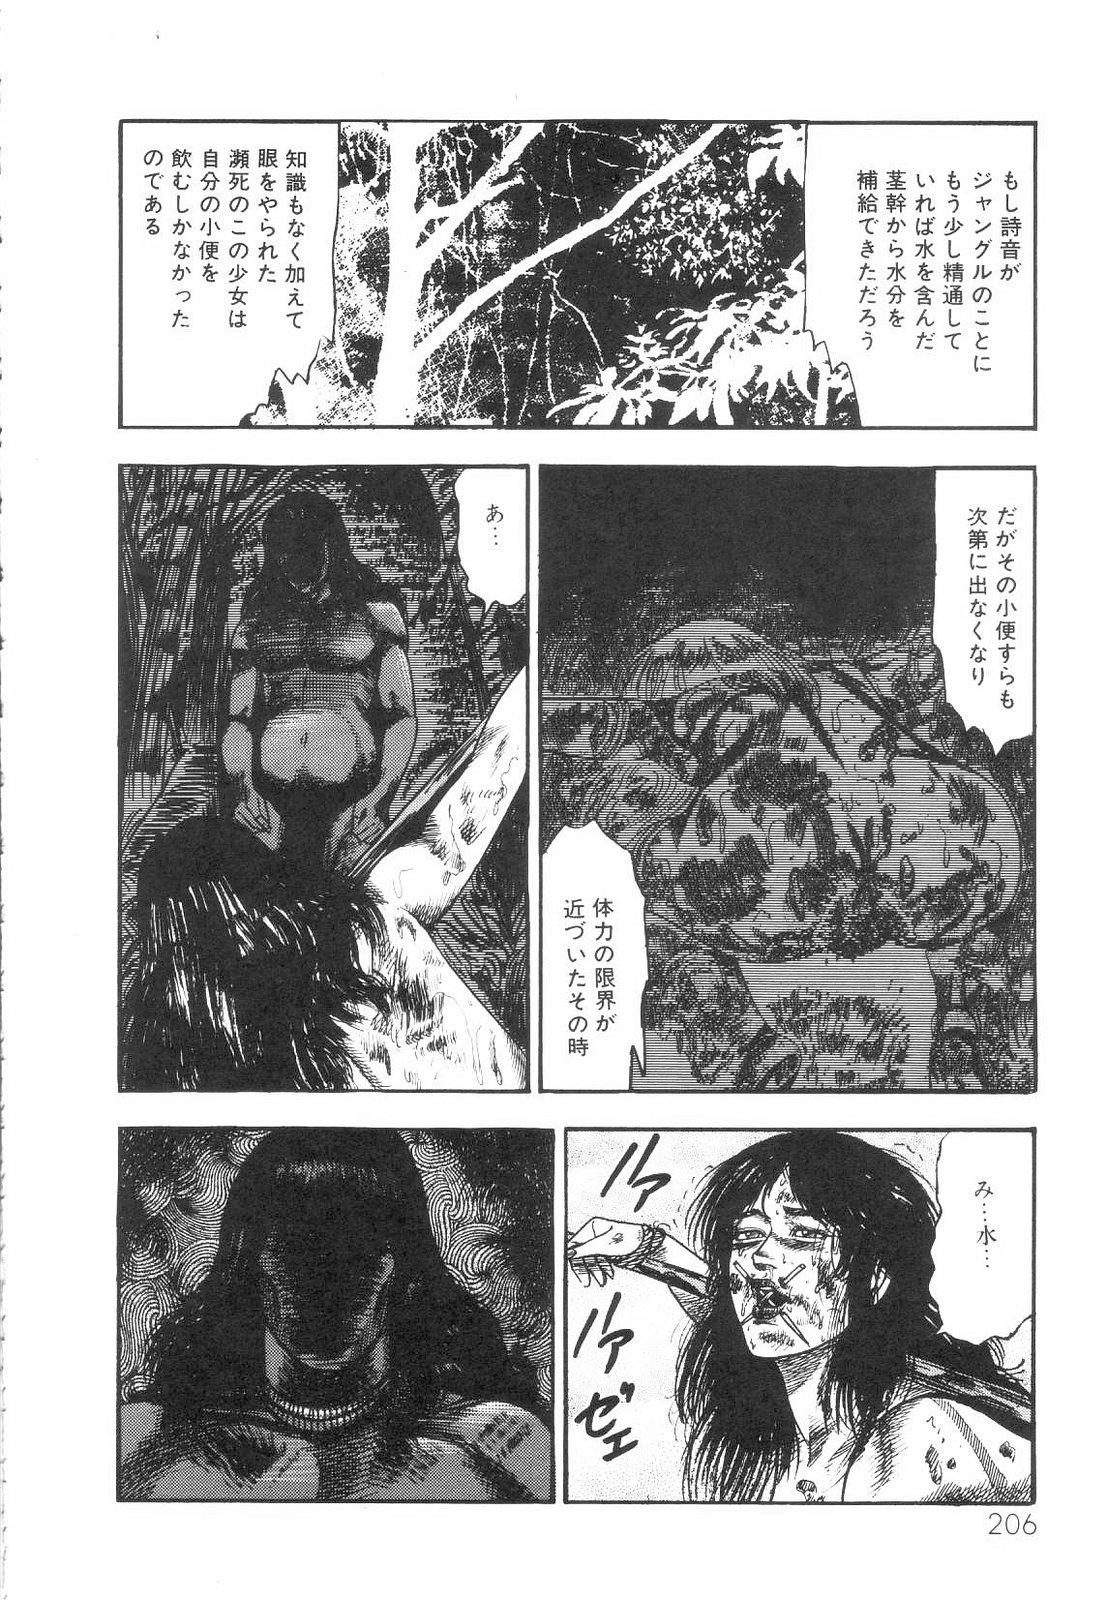 Shiro no Mokushiroku Vol. 1 - Sei Shojo Shion no Shou 206